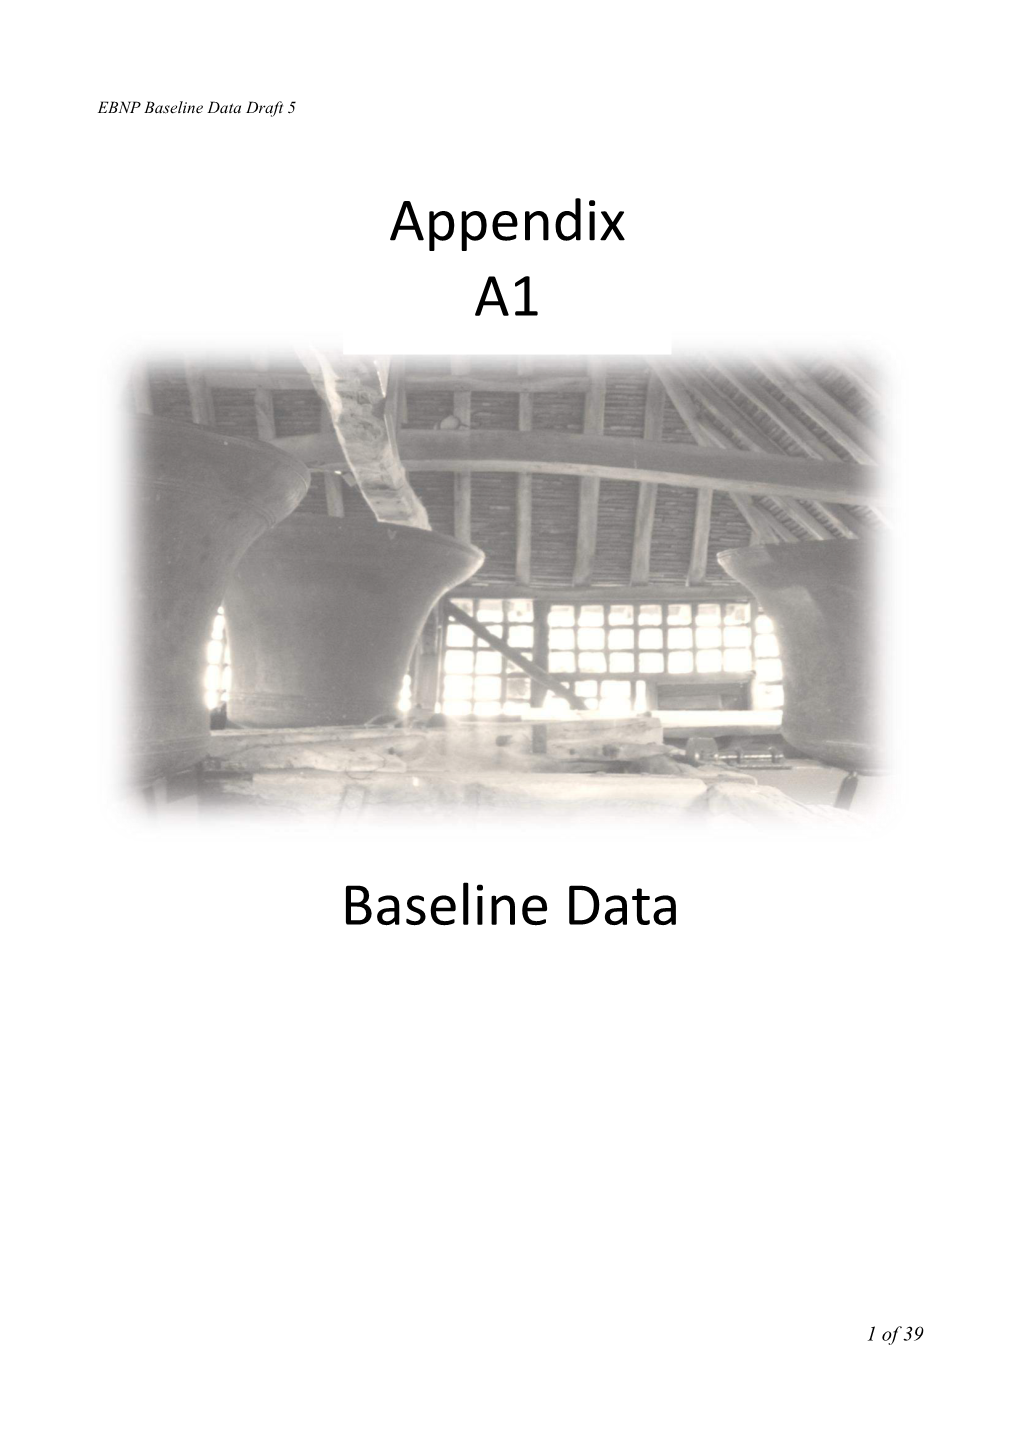 Baseline Data Appendix A1